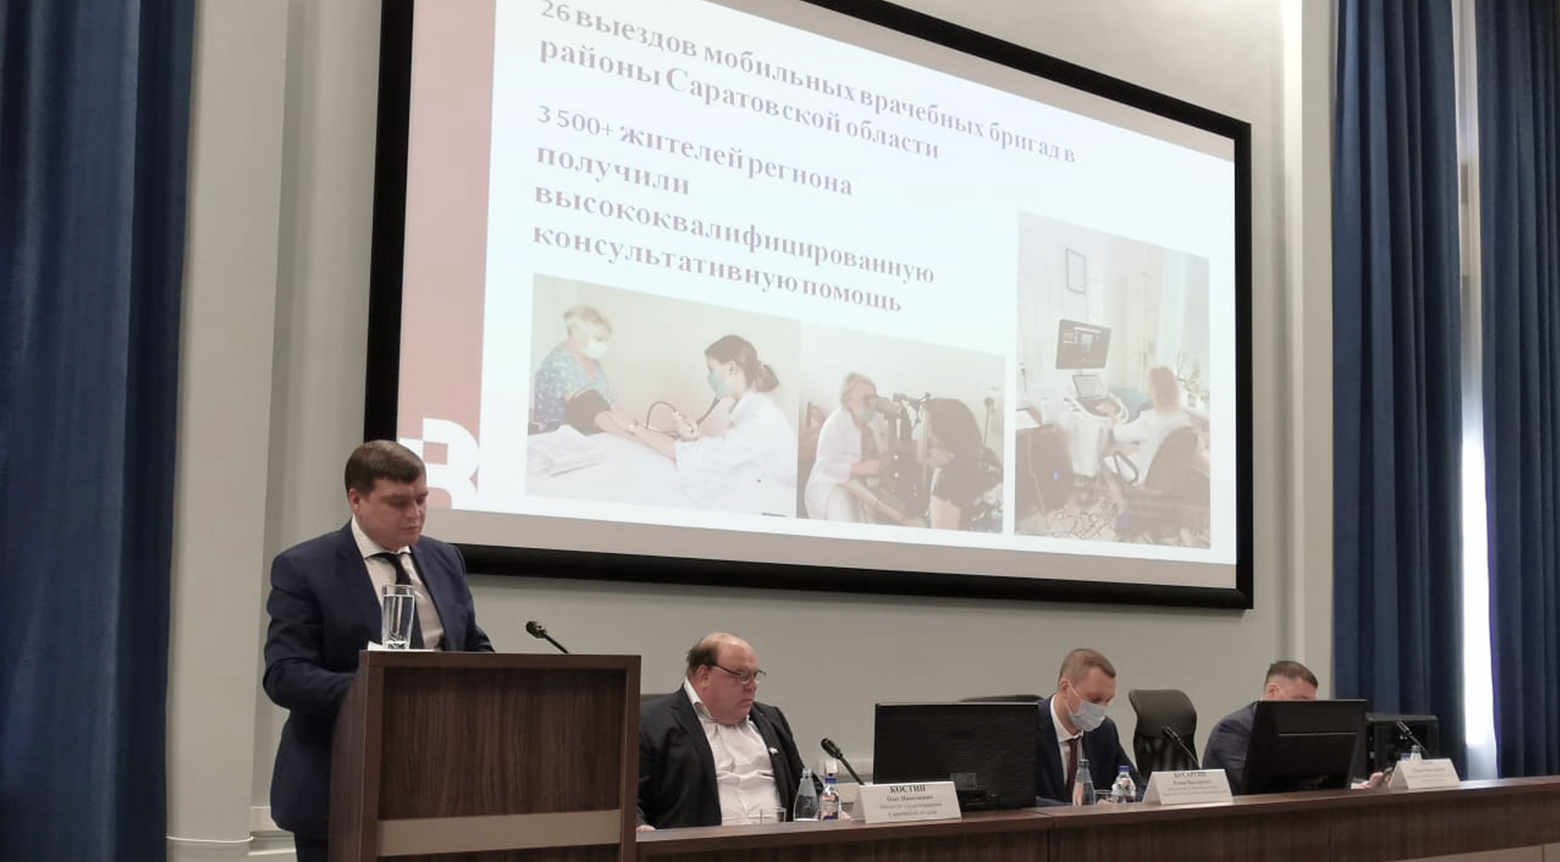 Роль Университета в системе здравоохранения Саратовской области в период пандемии COVID-19